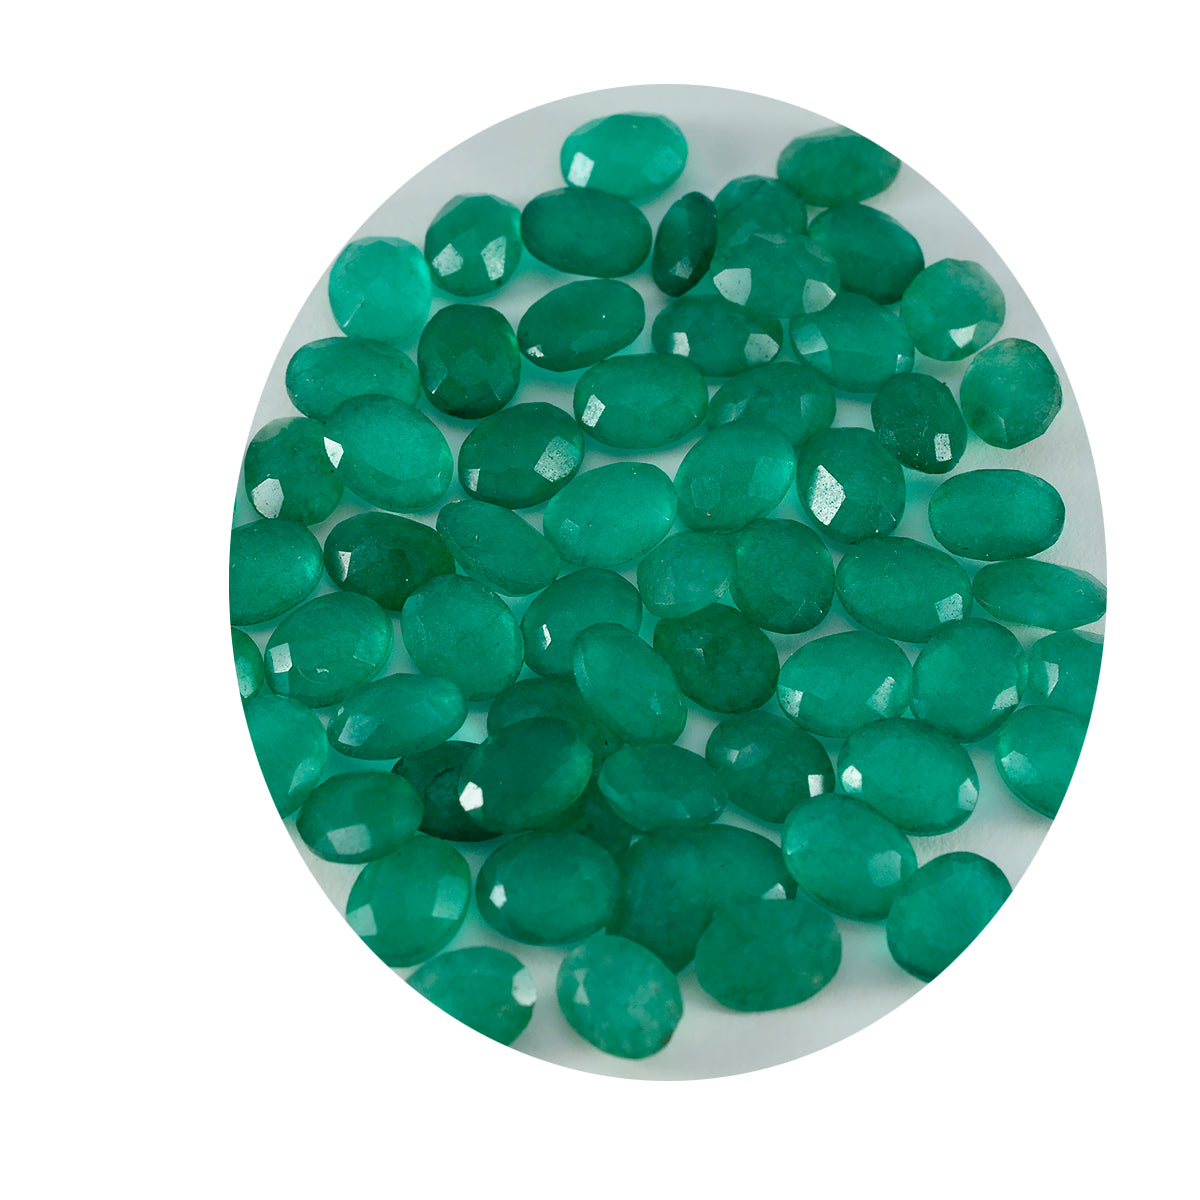 riyogems 1 шт. натуральная зеленая яшма граненая 5x7 мм овальной формы красивый качественный свободный драгоценный камень